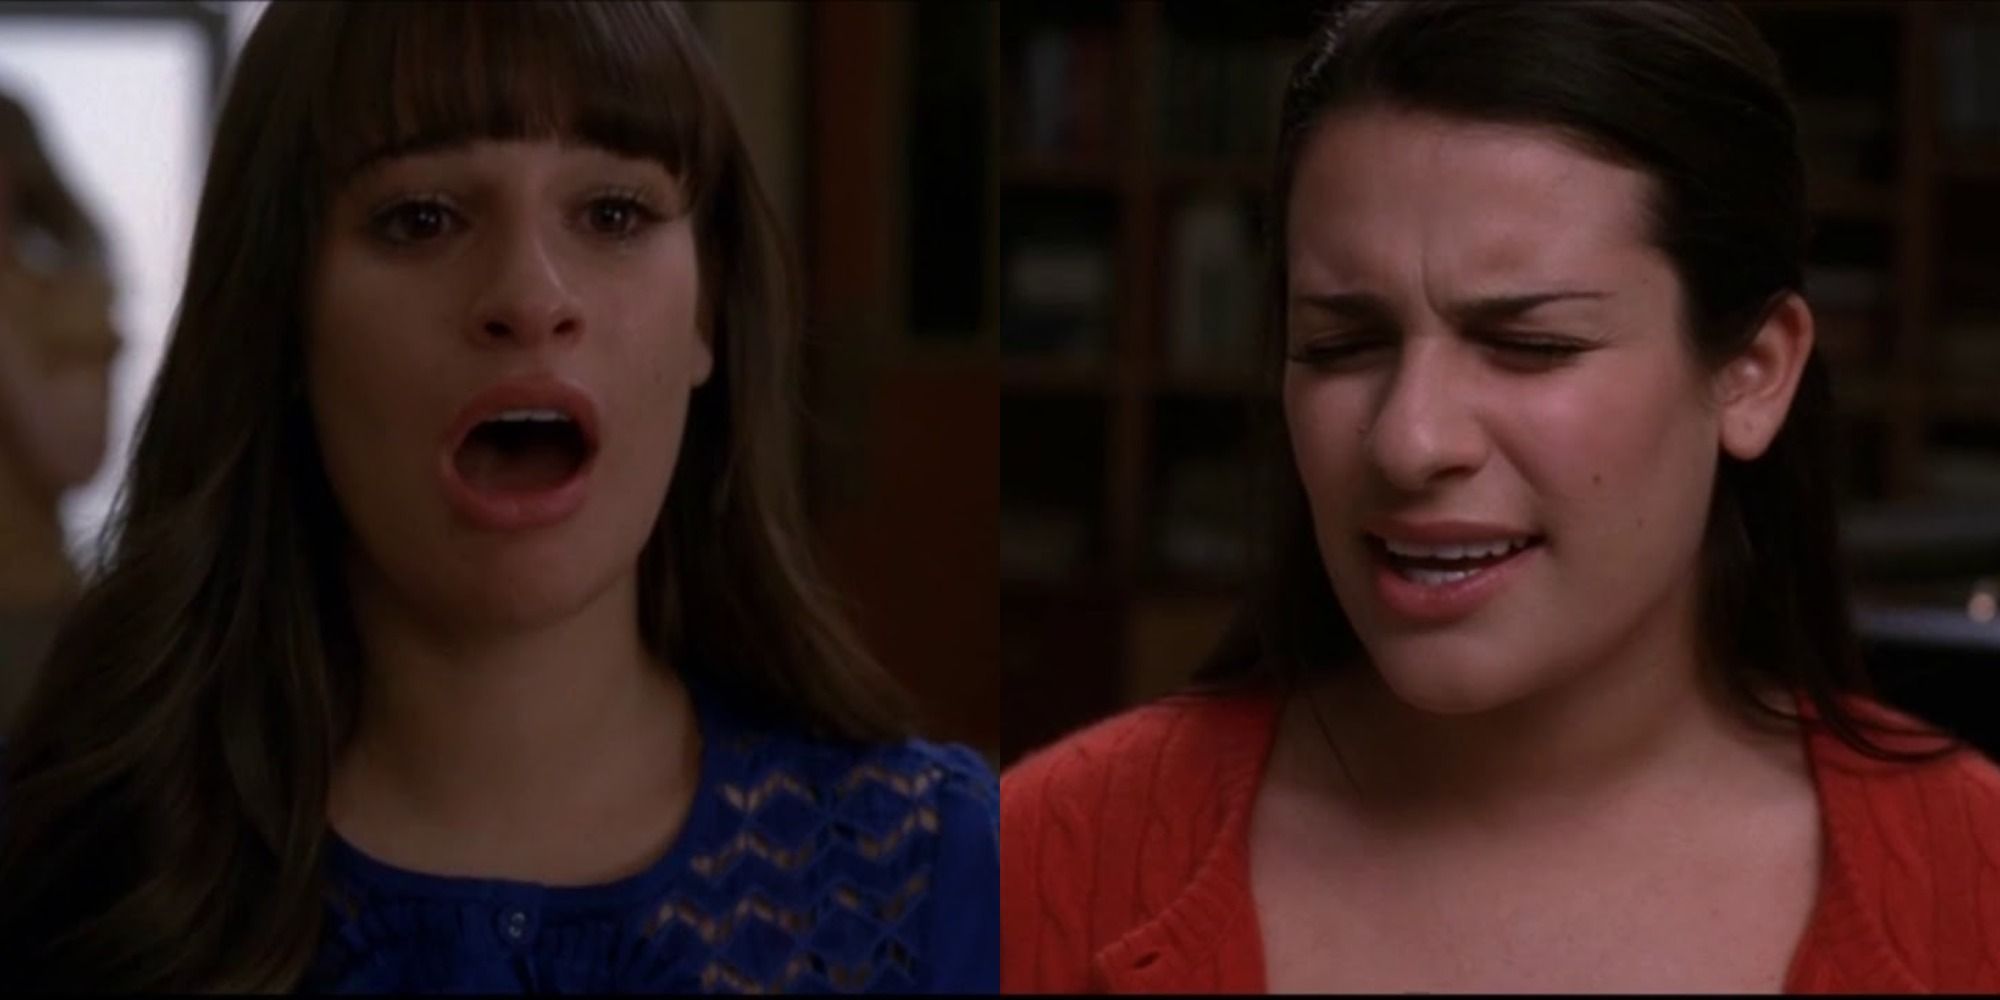 Glee Rachels 5 Best Performances (& Her 5 Worst)